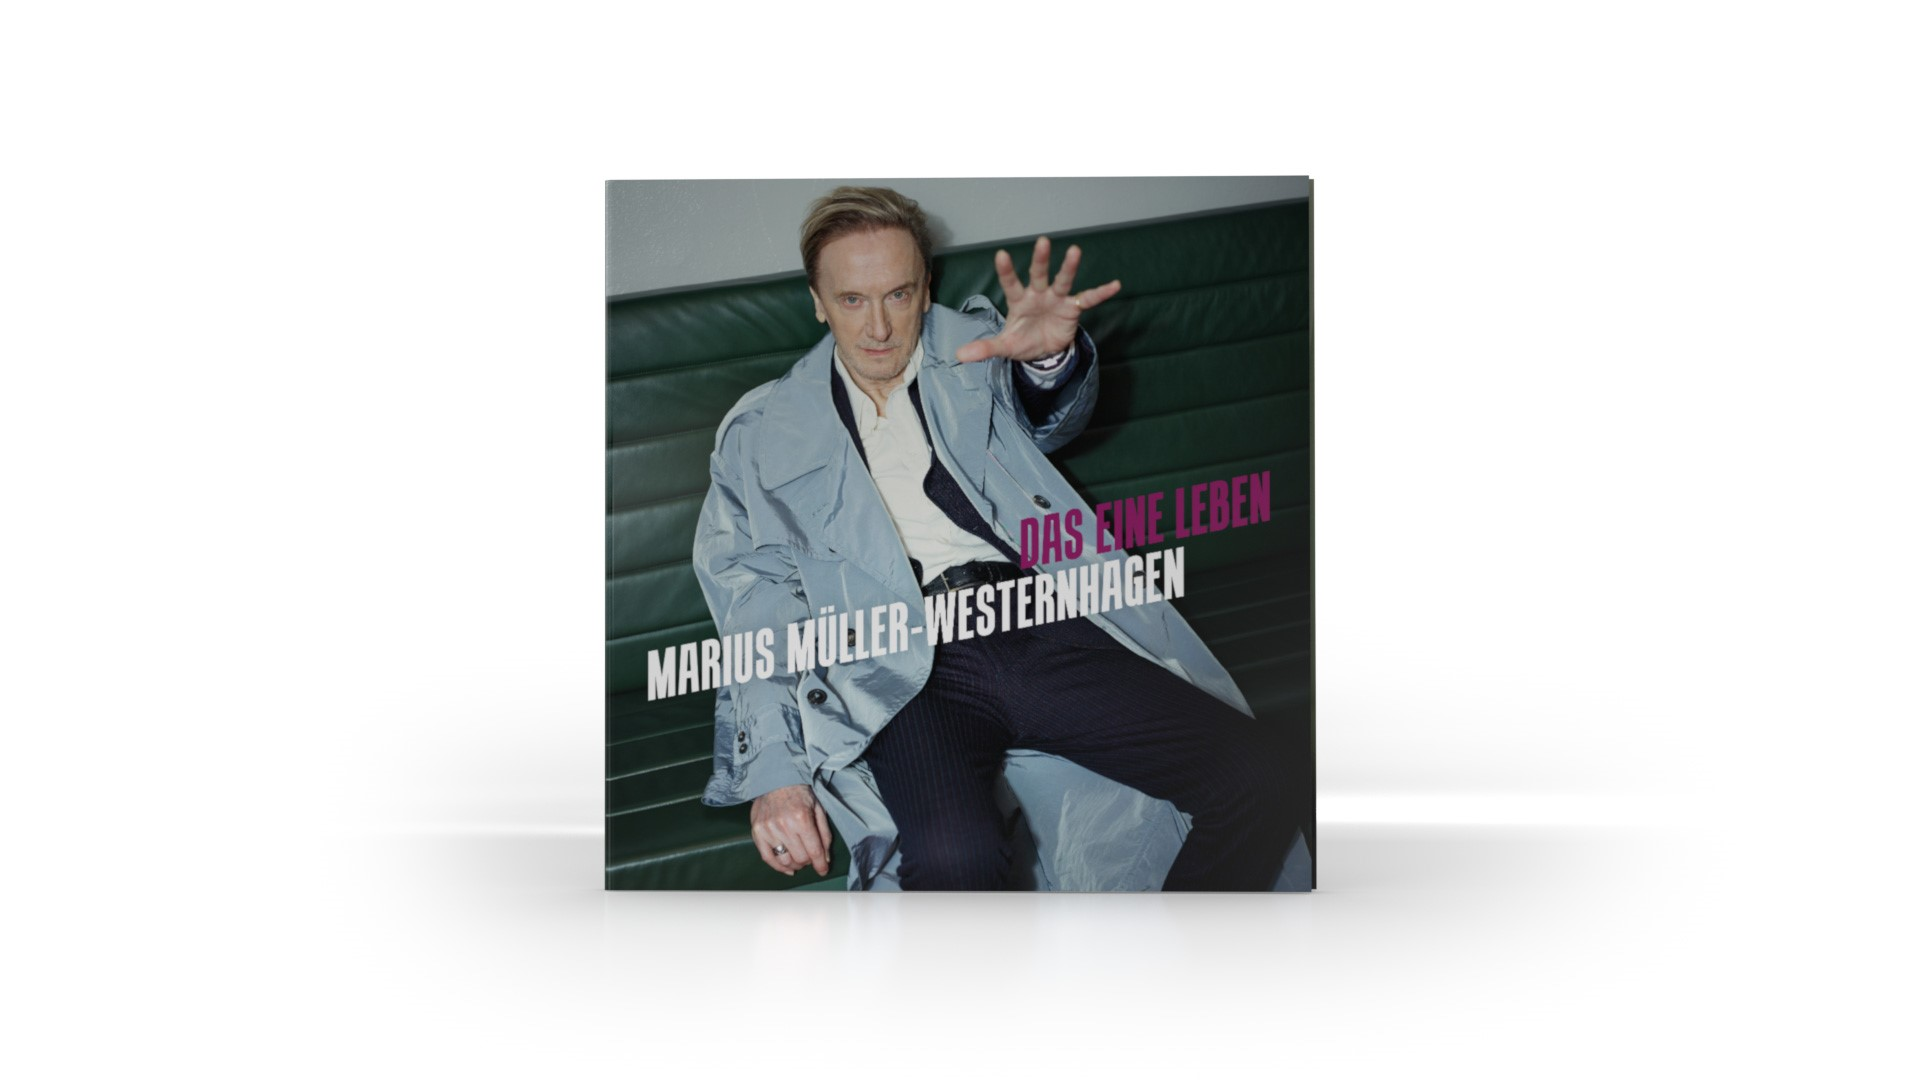 Marius Müller-Westernhagen (180g black Gatefold, 180g, Leben black eine - (Vinyl) vinyl) Das 